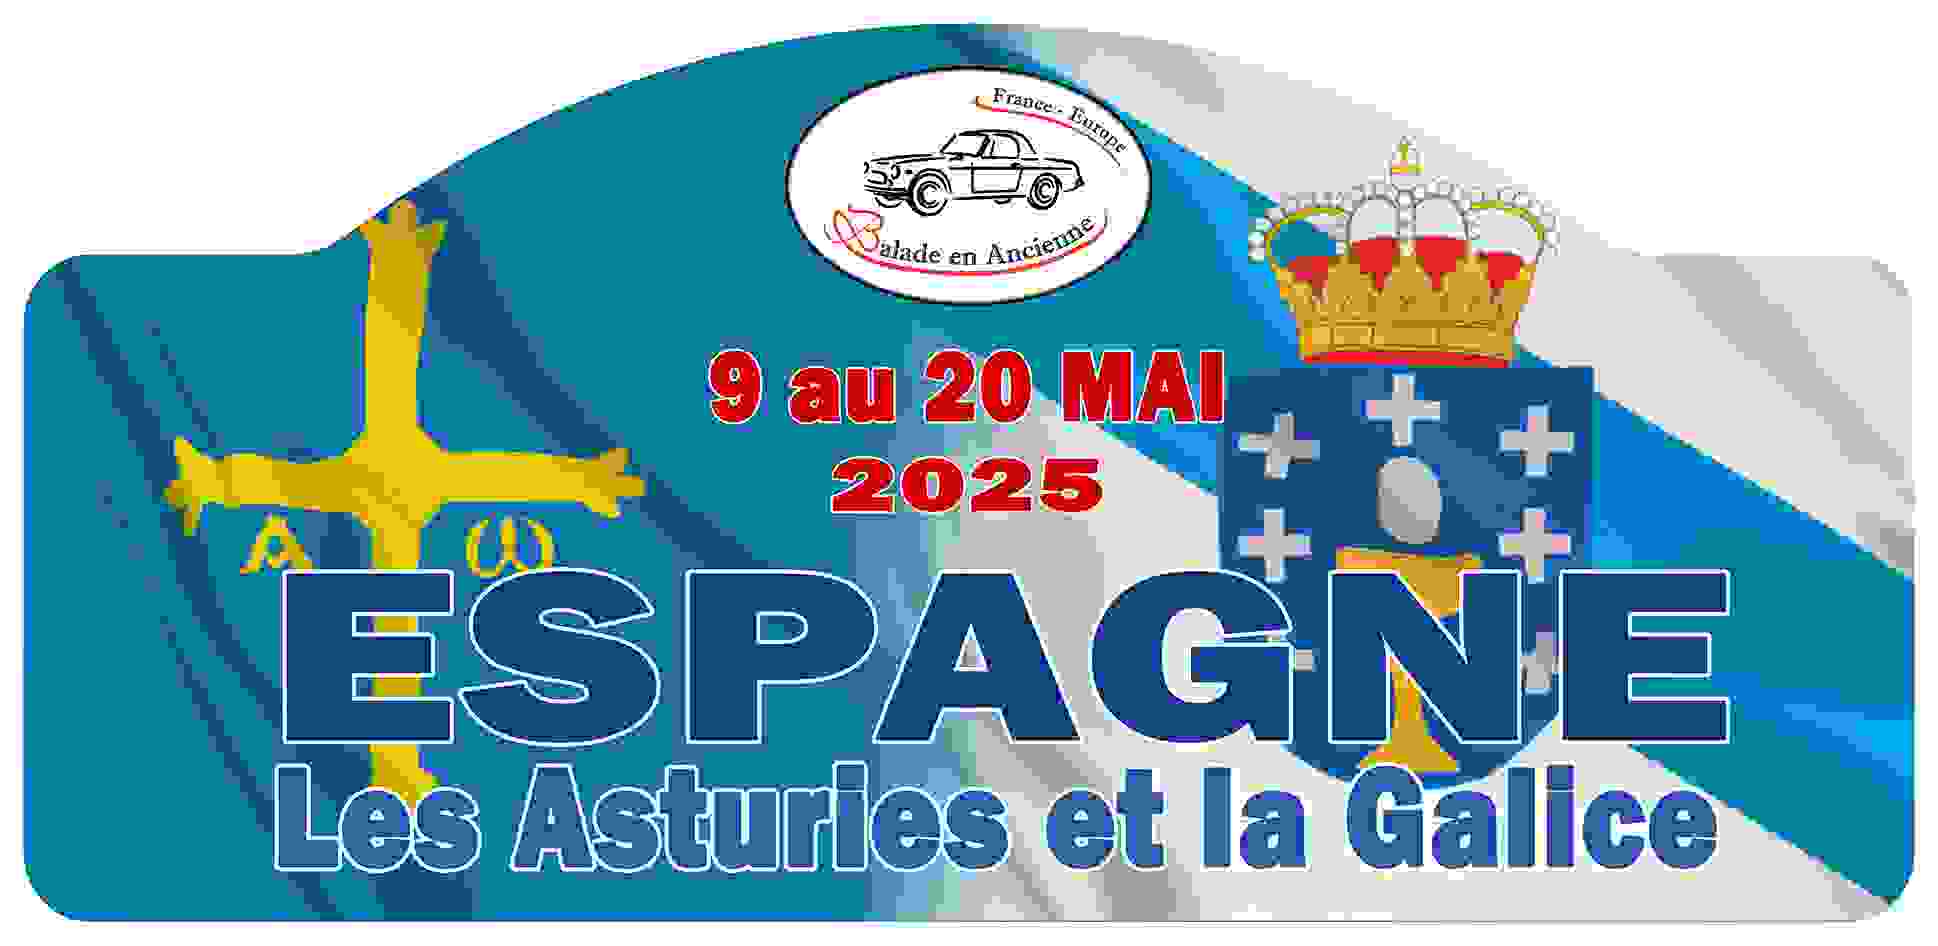 Rallye touristique Espagne Les Asturies et la Galice